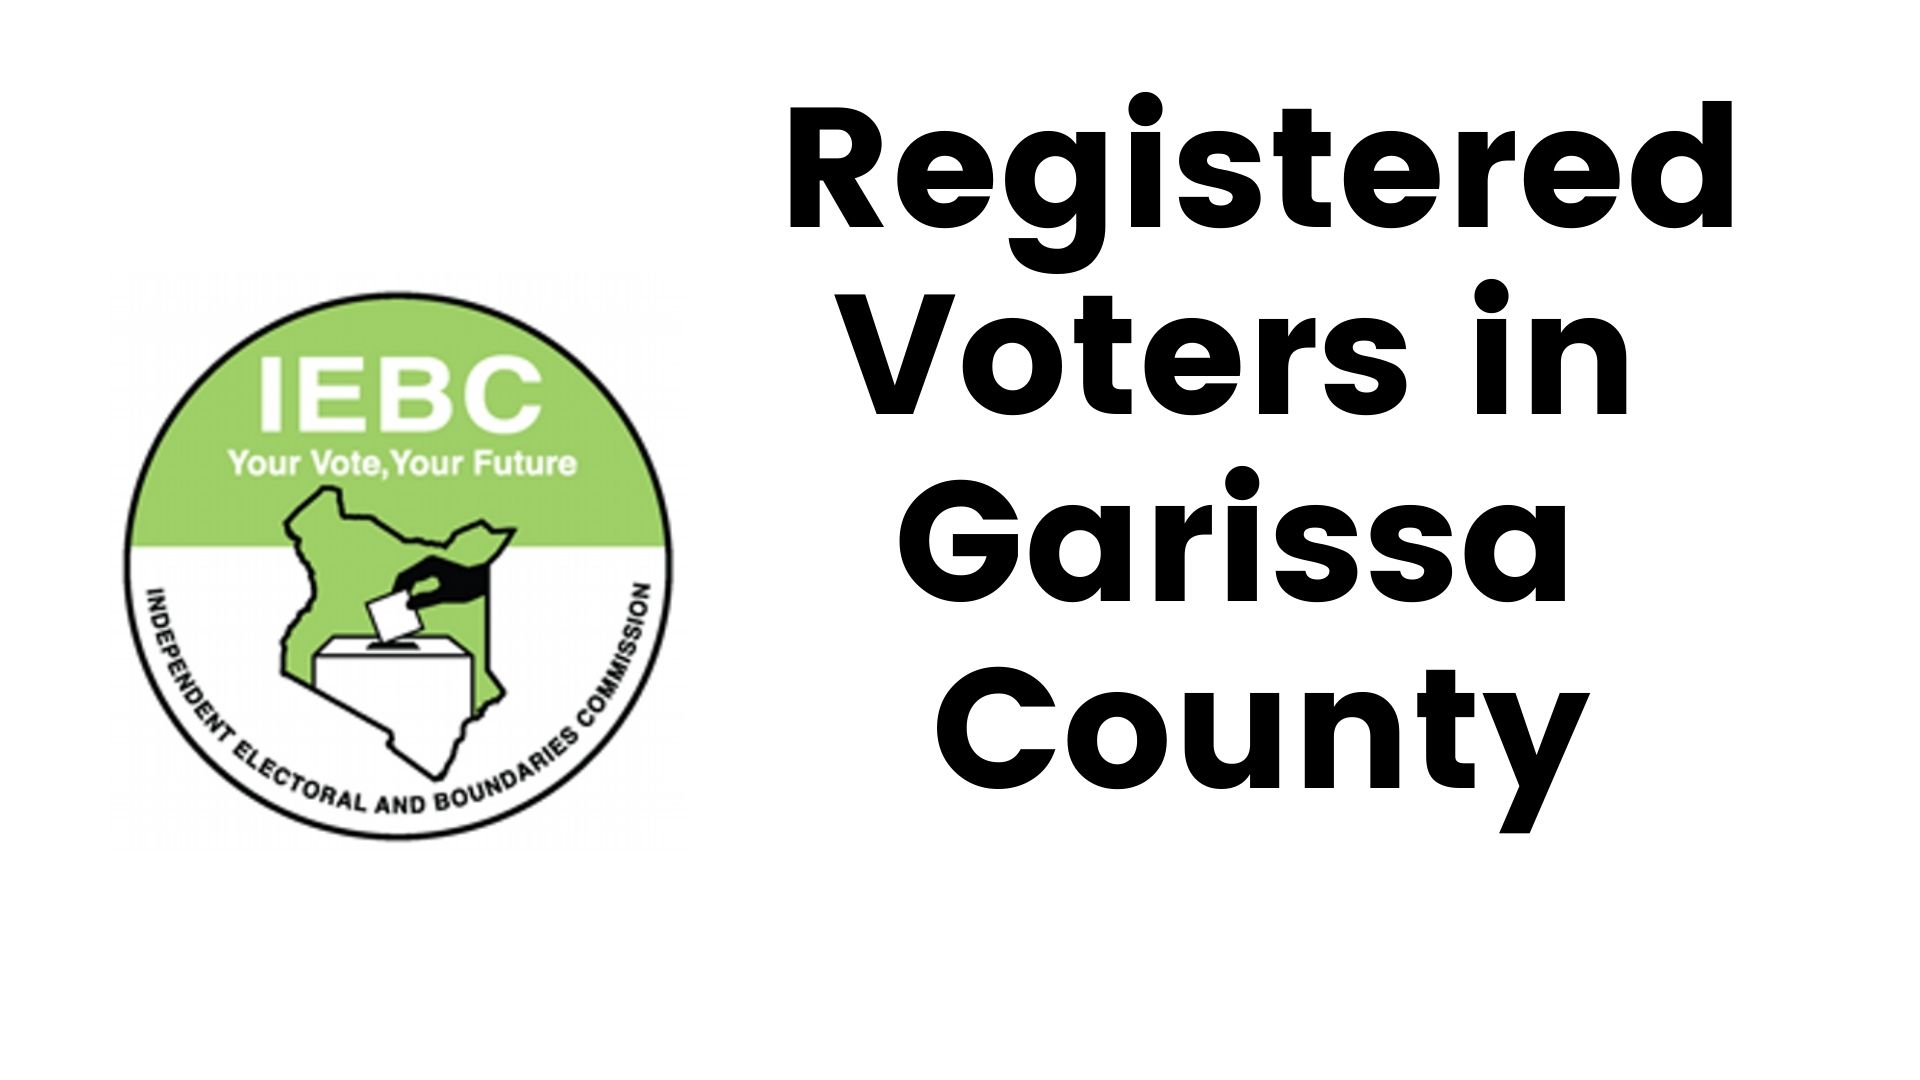 IEBC Garissa County Registered Voters